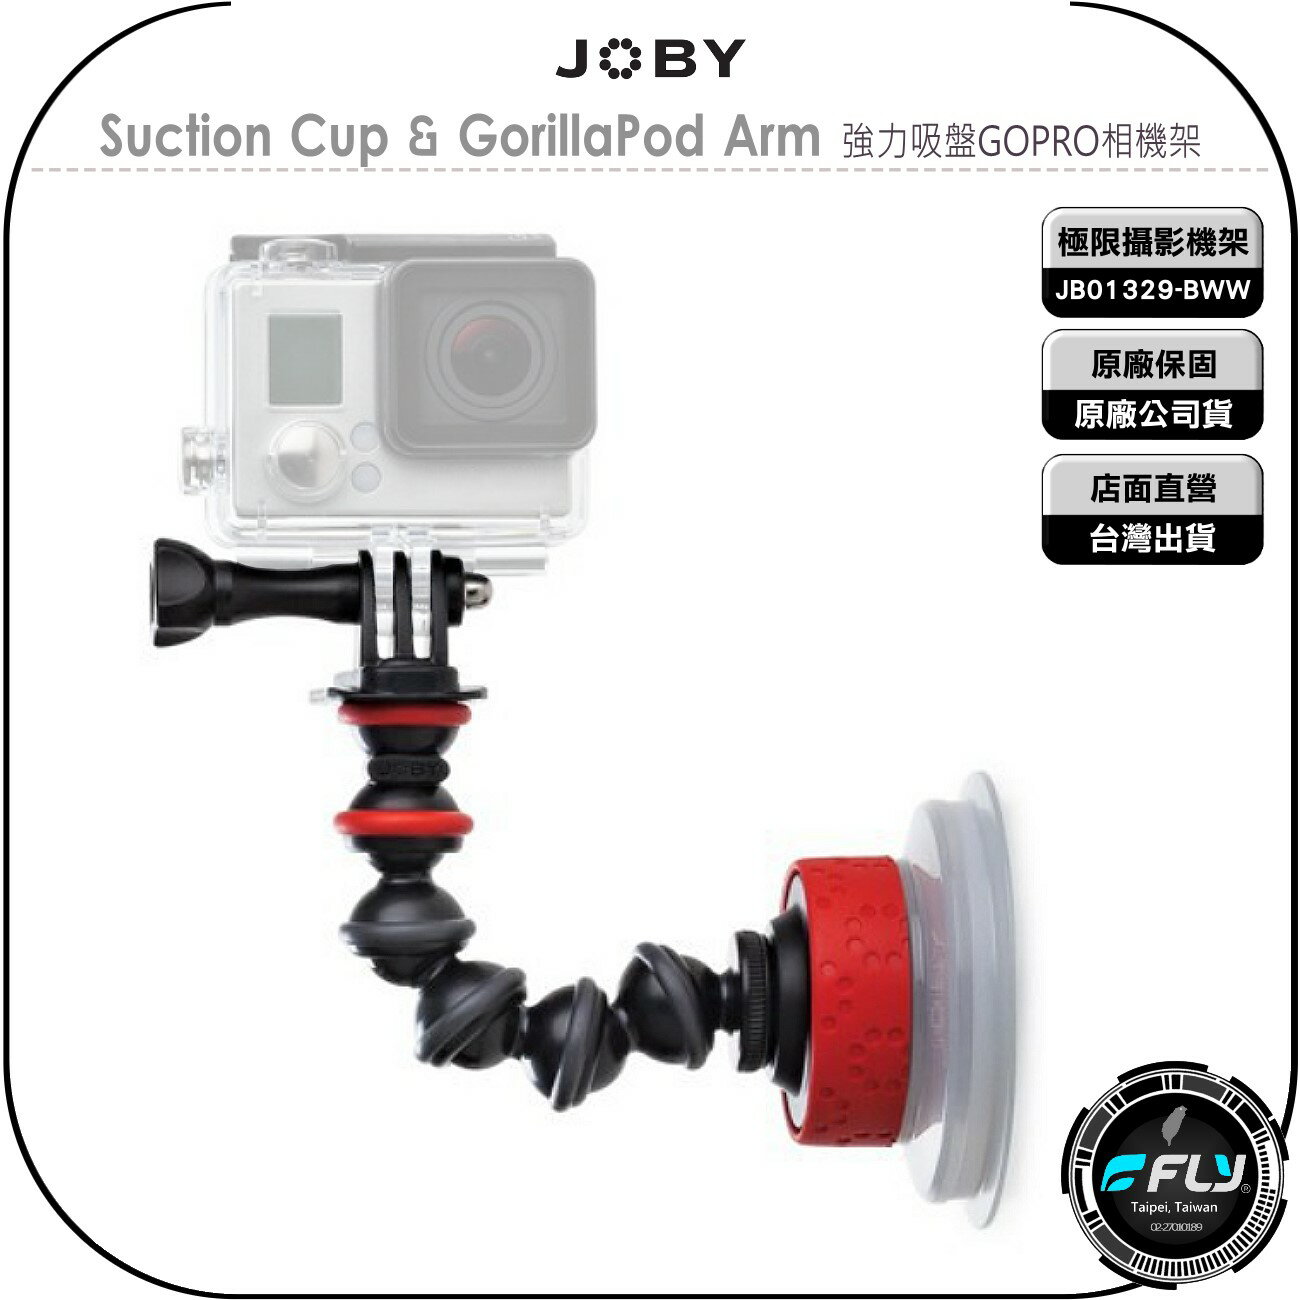 《飛翔無線3C》JOBY Suction Cup & GorillaPod Arm 強力吸盤GOPRO相機架◉公司貨